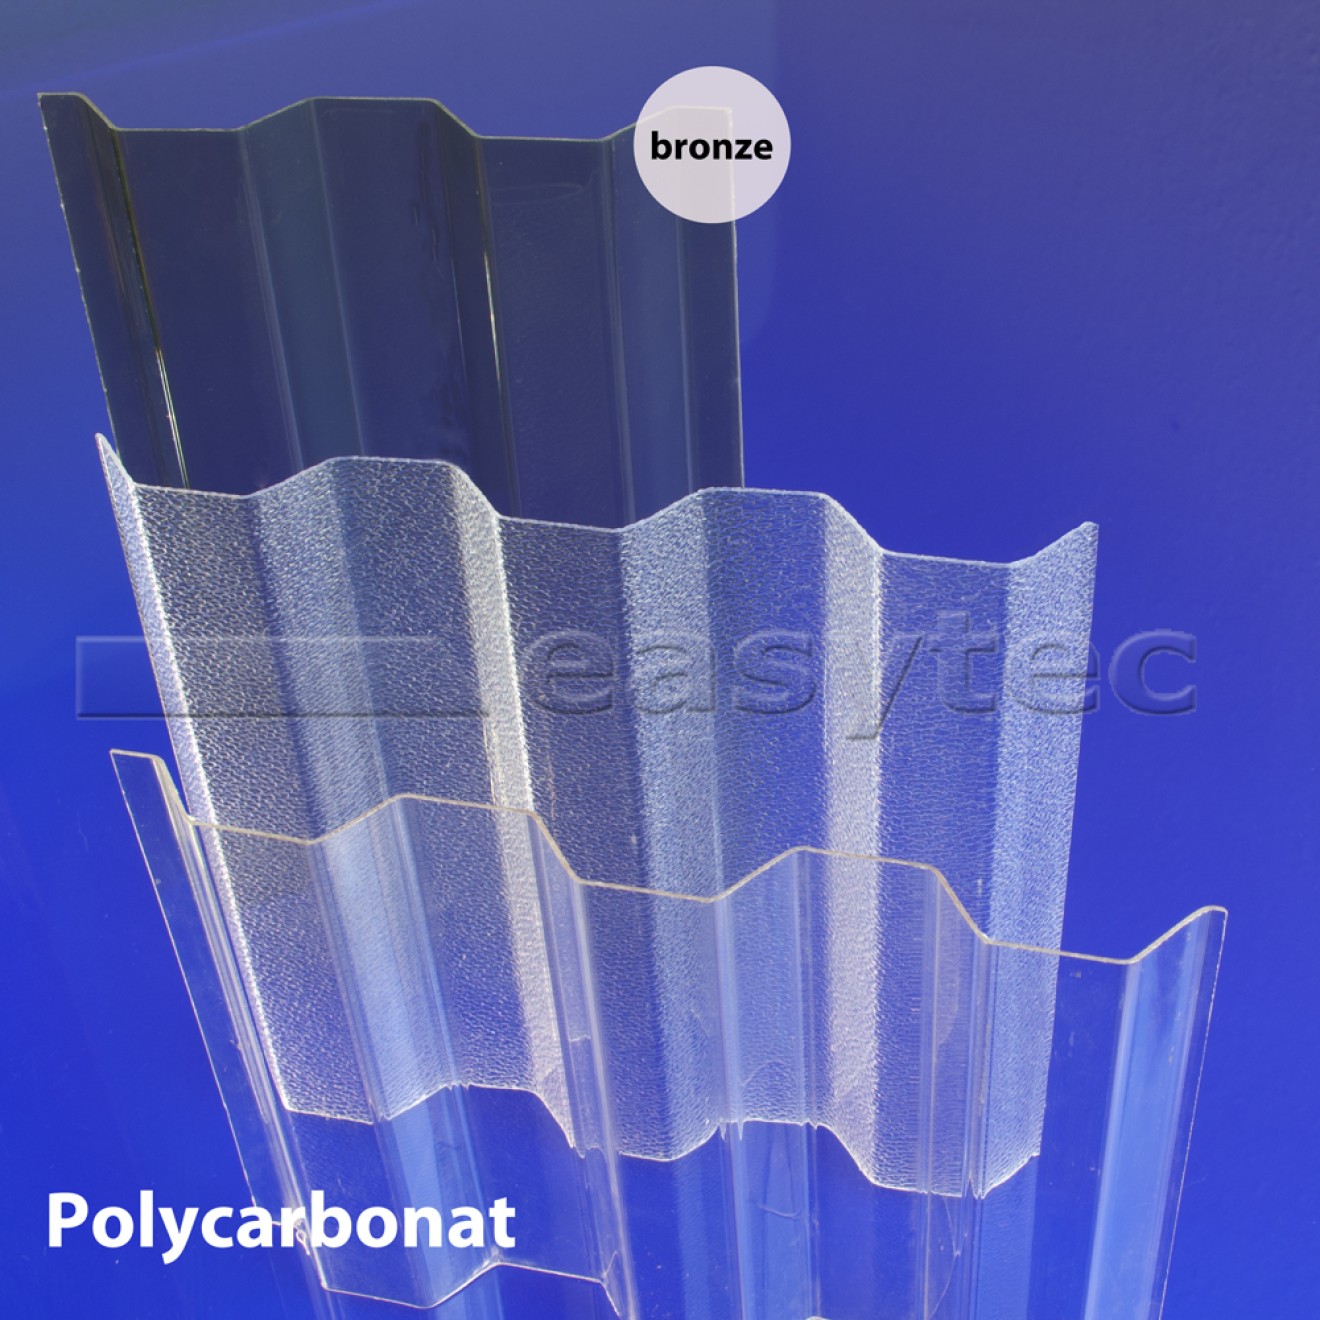 Polycarbonat Lichtplatten bronze mit UV Schutz